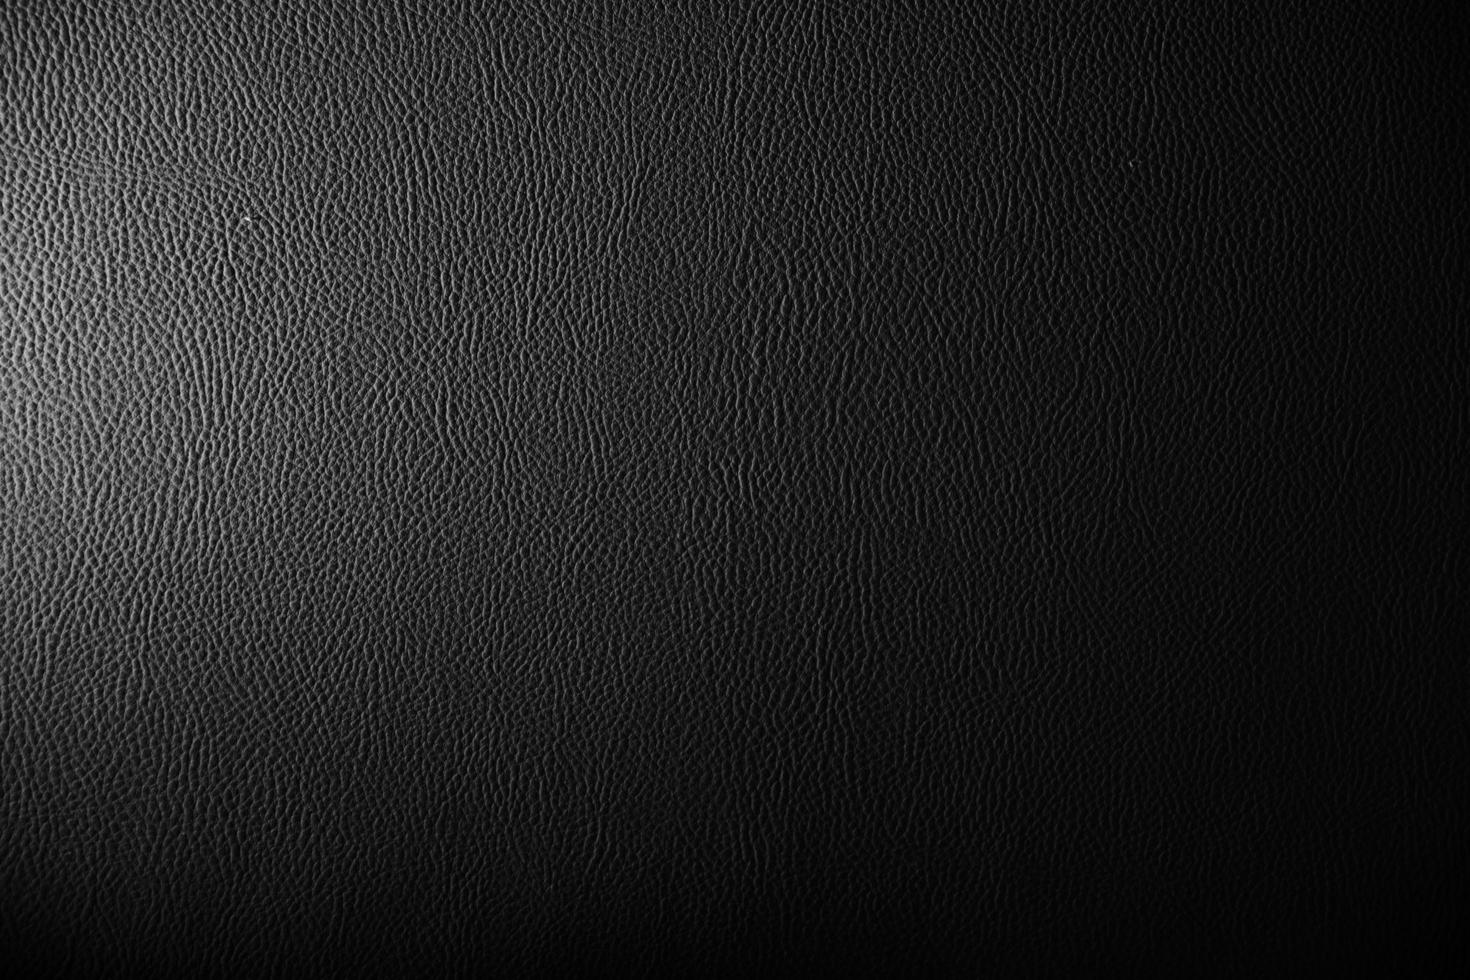 fundo preto velho. textura grunge. papel de parede escuro. quadro-negro, quadro-negro, parede do quarto. foto